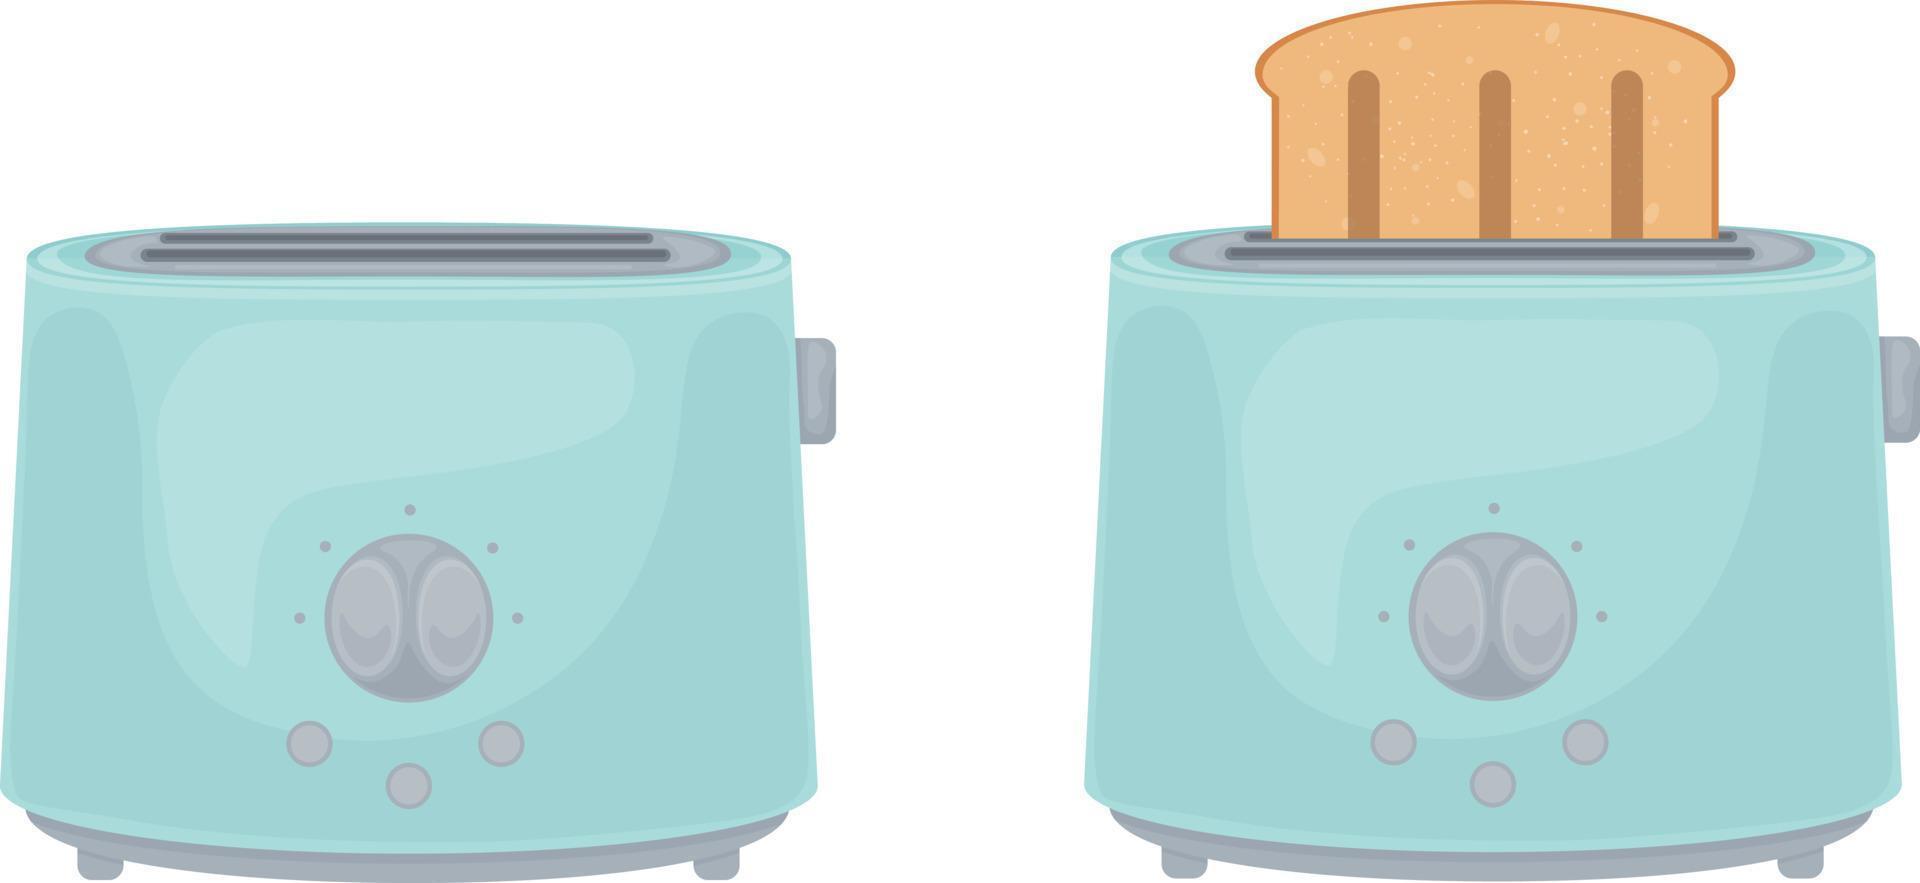 ilustración con la imagen de tostadoras azules. tostadora con tostadas y vacía. un aparato de cocina eléctrico diseñado para asar finas rebanadas de pan. ilustración vectorial aislada en un fondo blanco vector